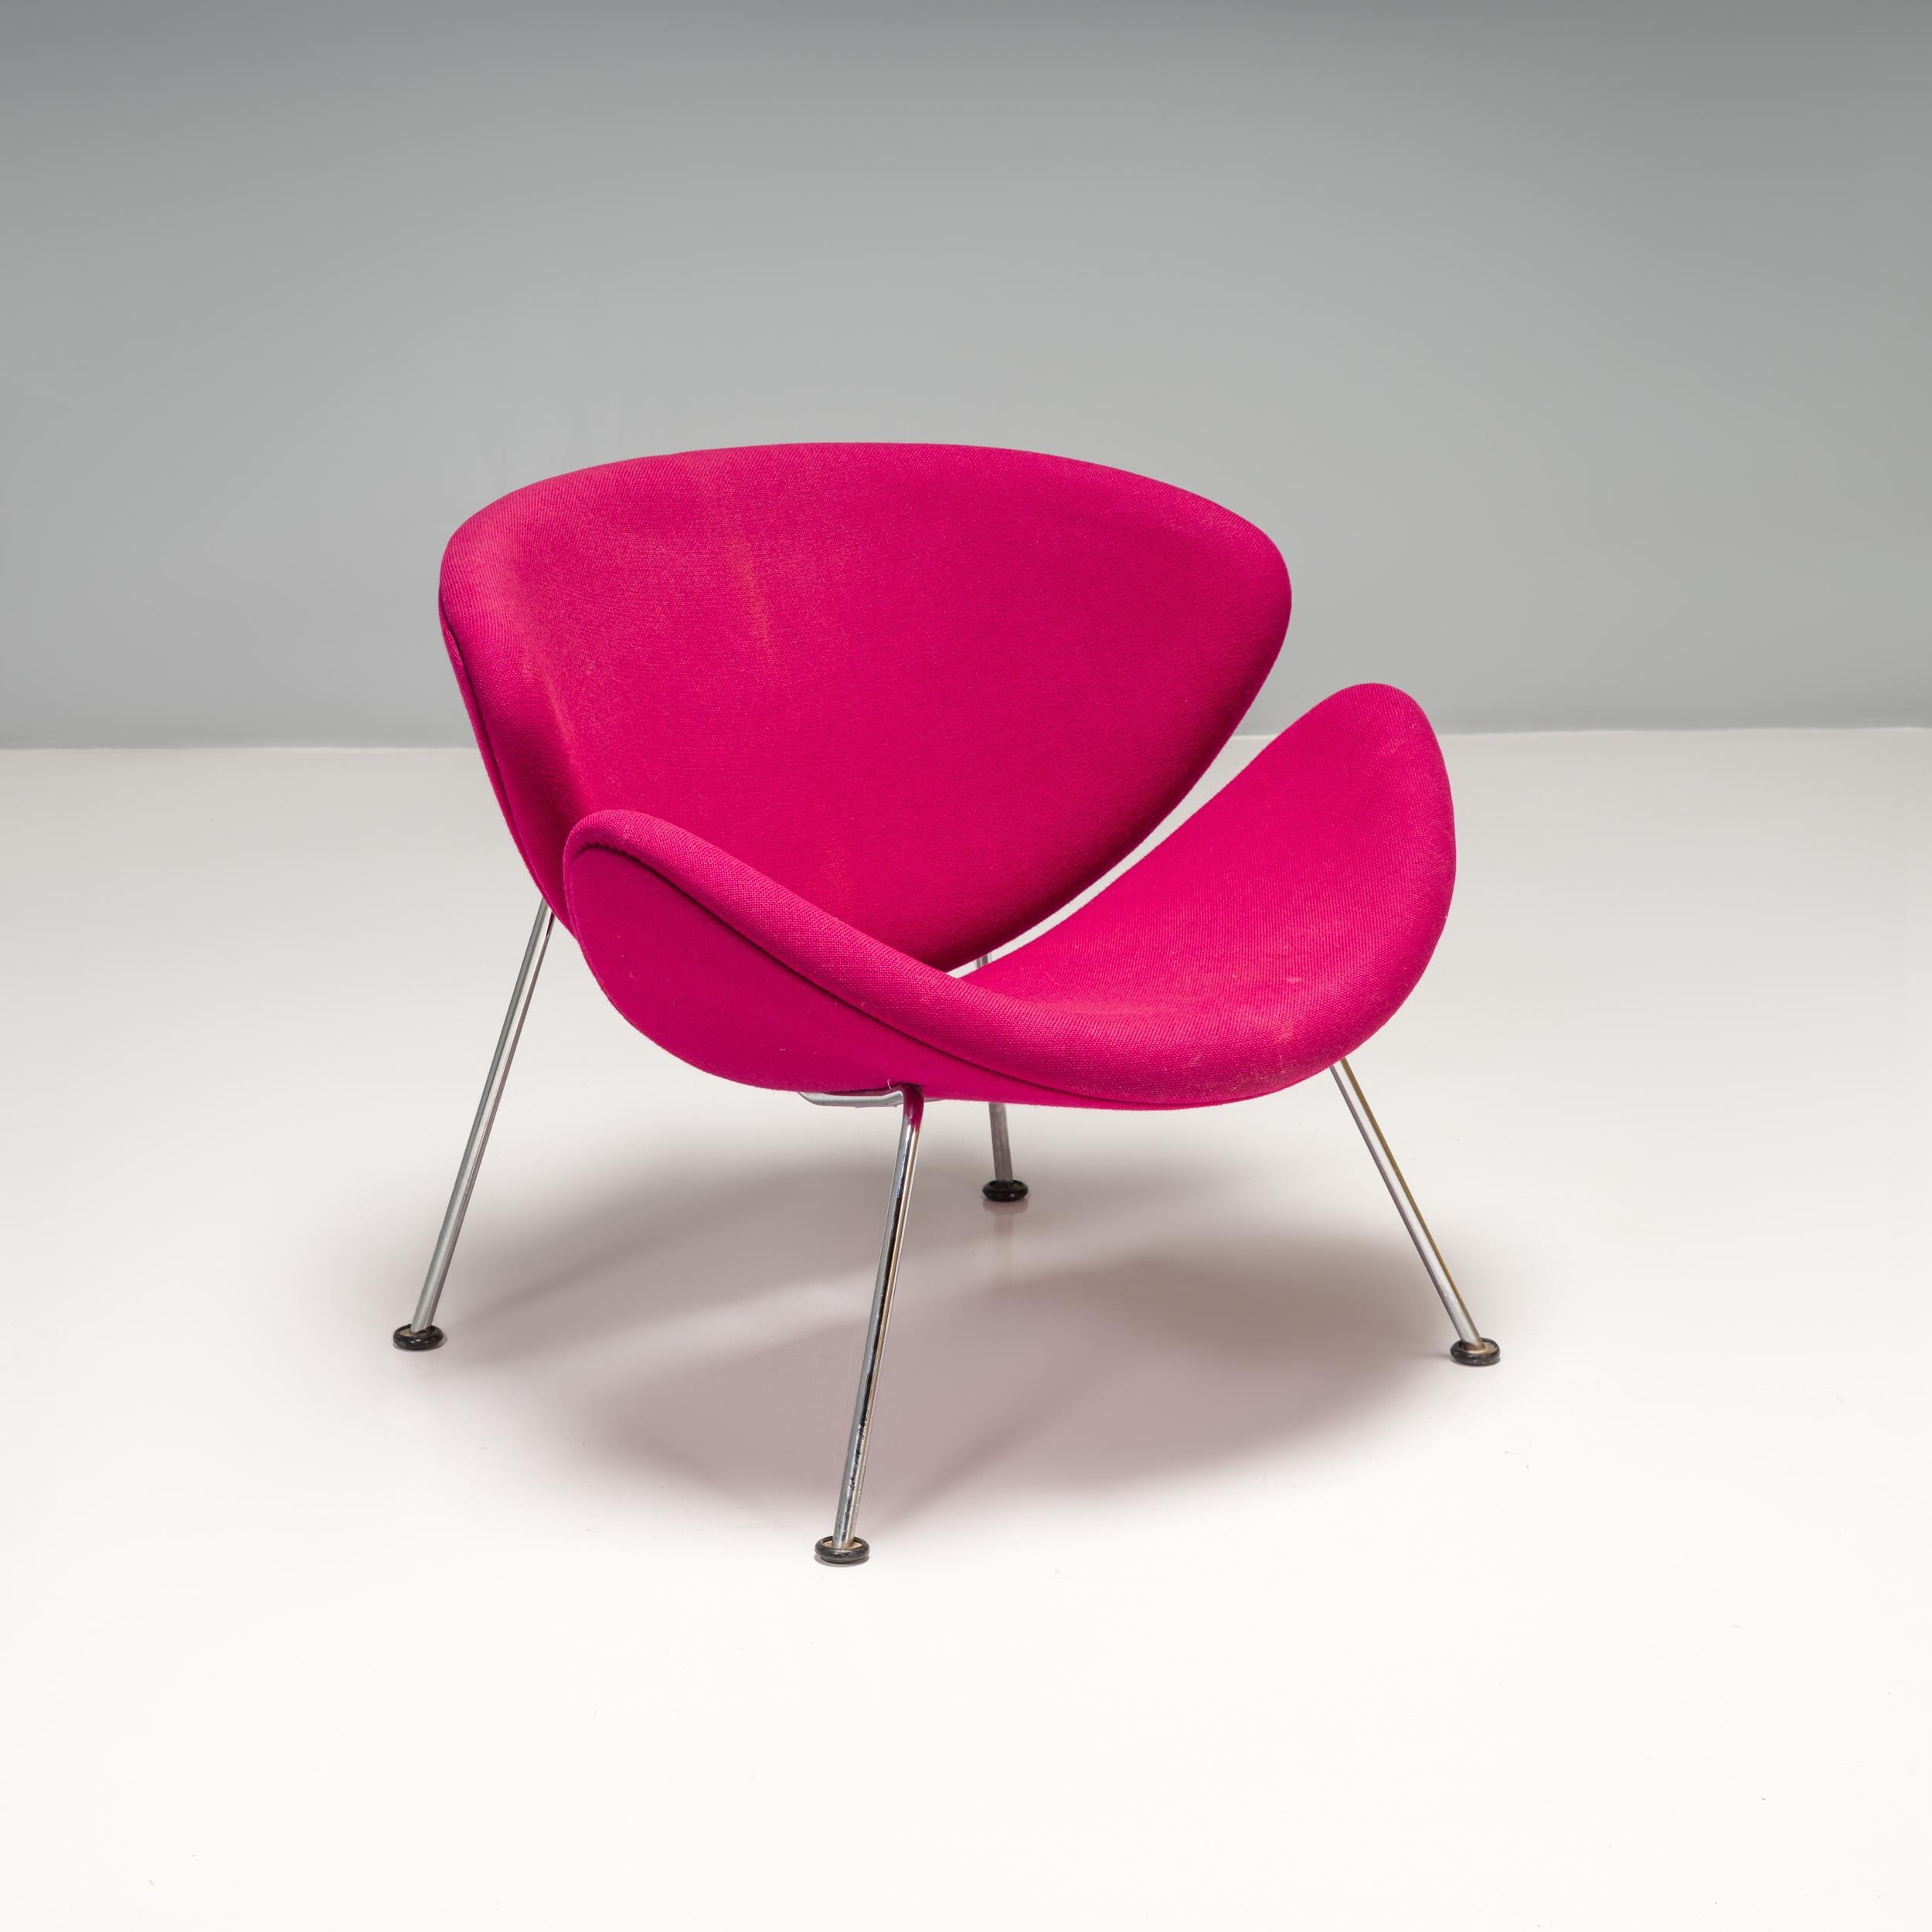 Der ursprünglich von Pierre Paulin in Zusammenarbeit mit Artifort in den 50er Jahren entworfene Stuhl Orange Slice wurde erst 1960 hergestellt und hat sich seitdem zu einer Designikone entwickelt.

Das einzigartige Design entstand, nachdem Paulin